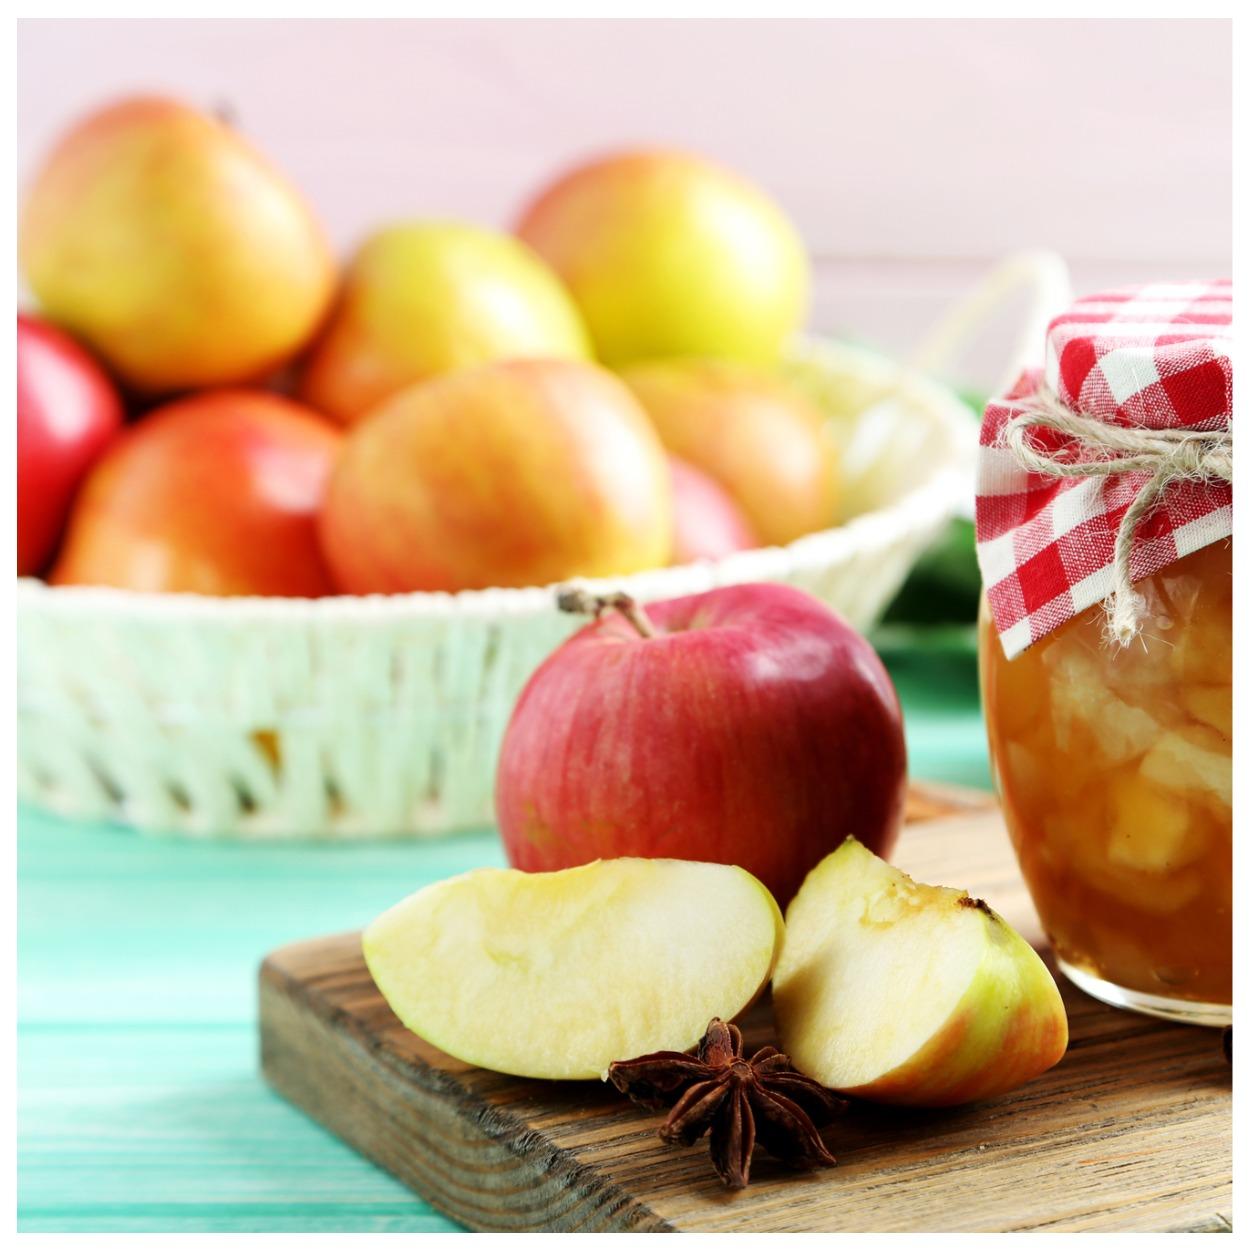 Яблоко на ужин, и доктор не нужен: польза любимых фруктов